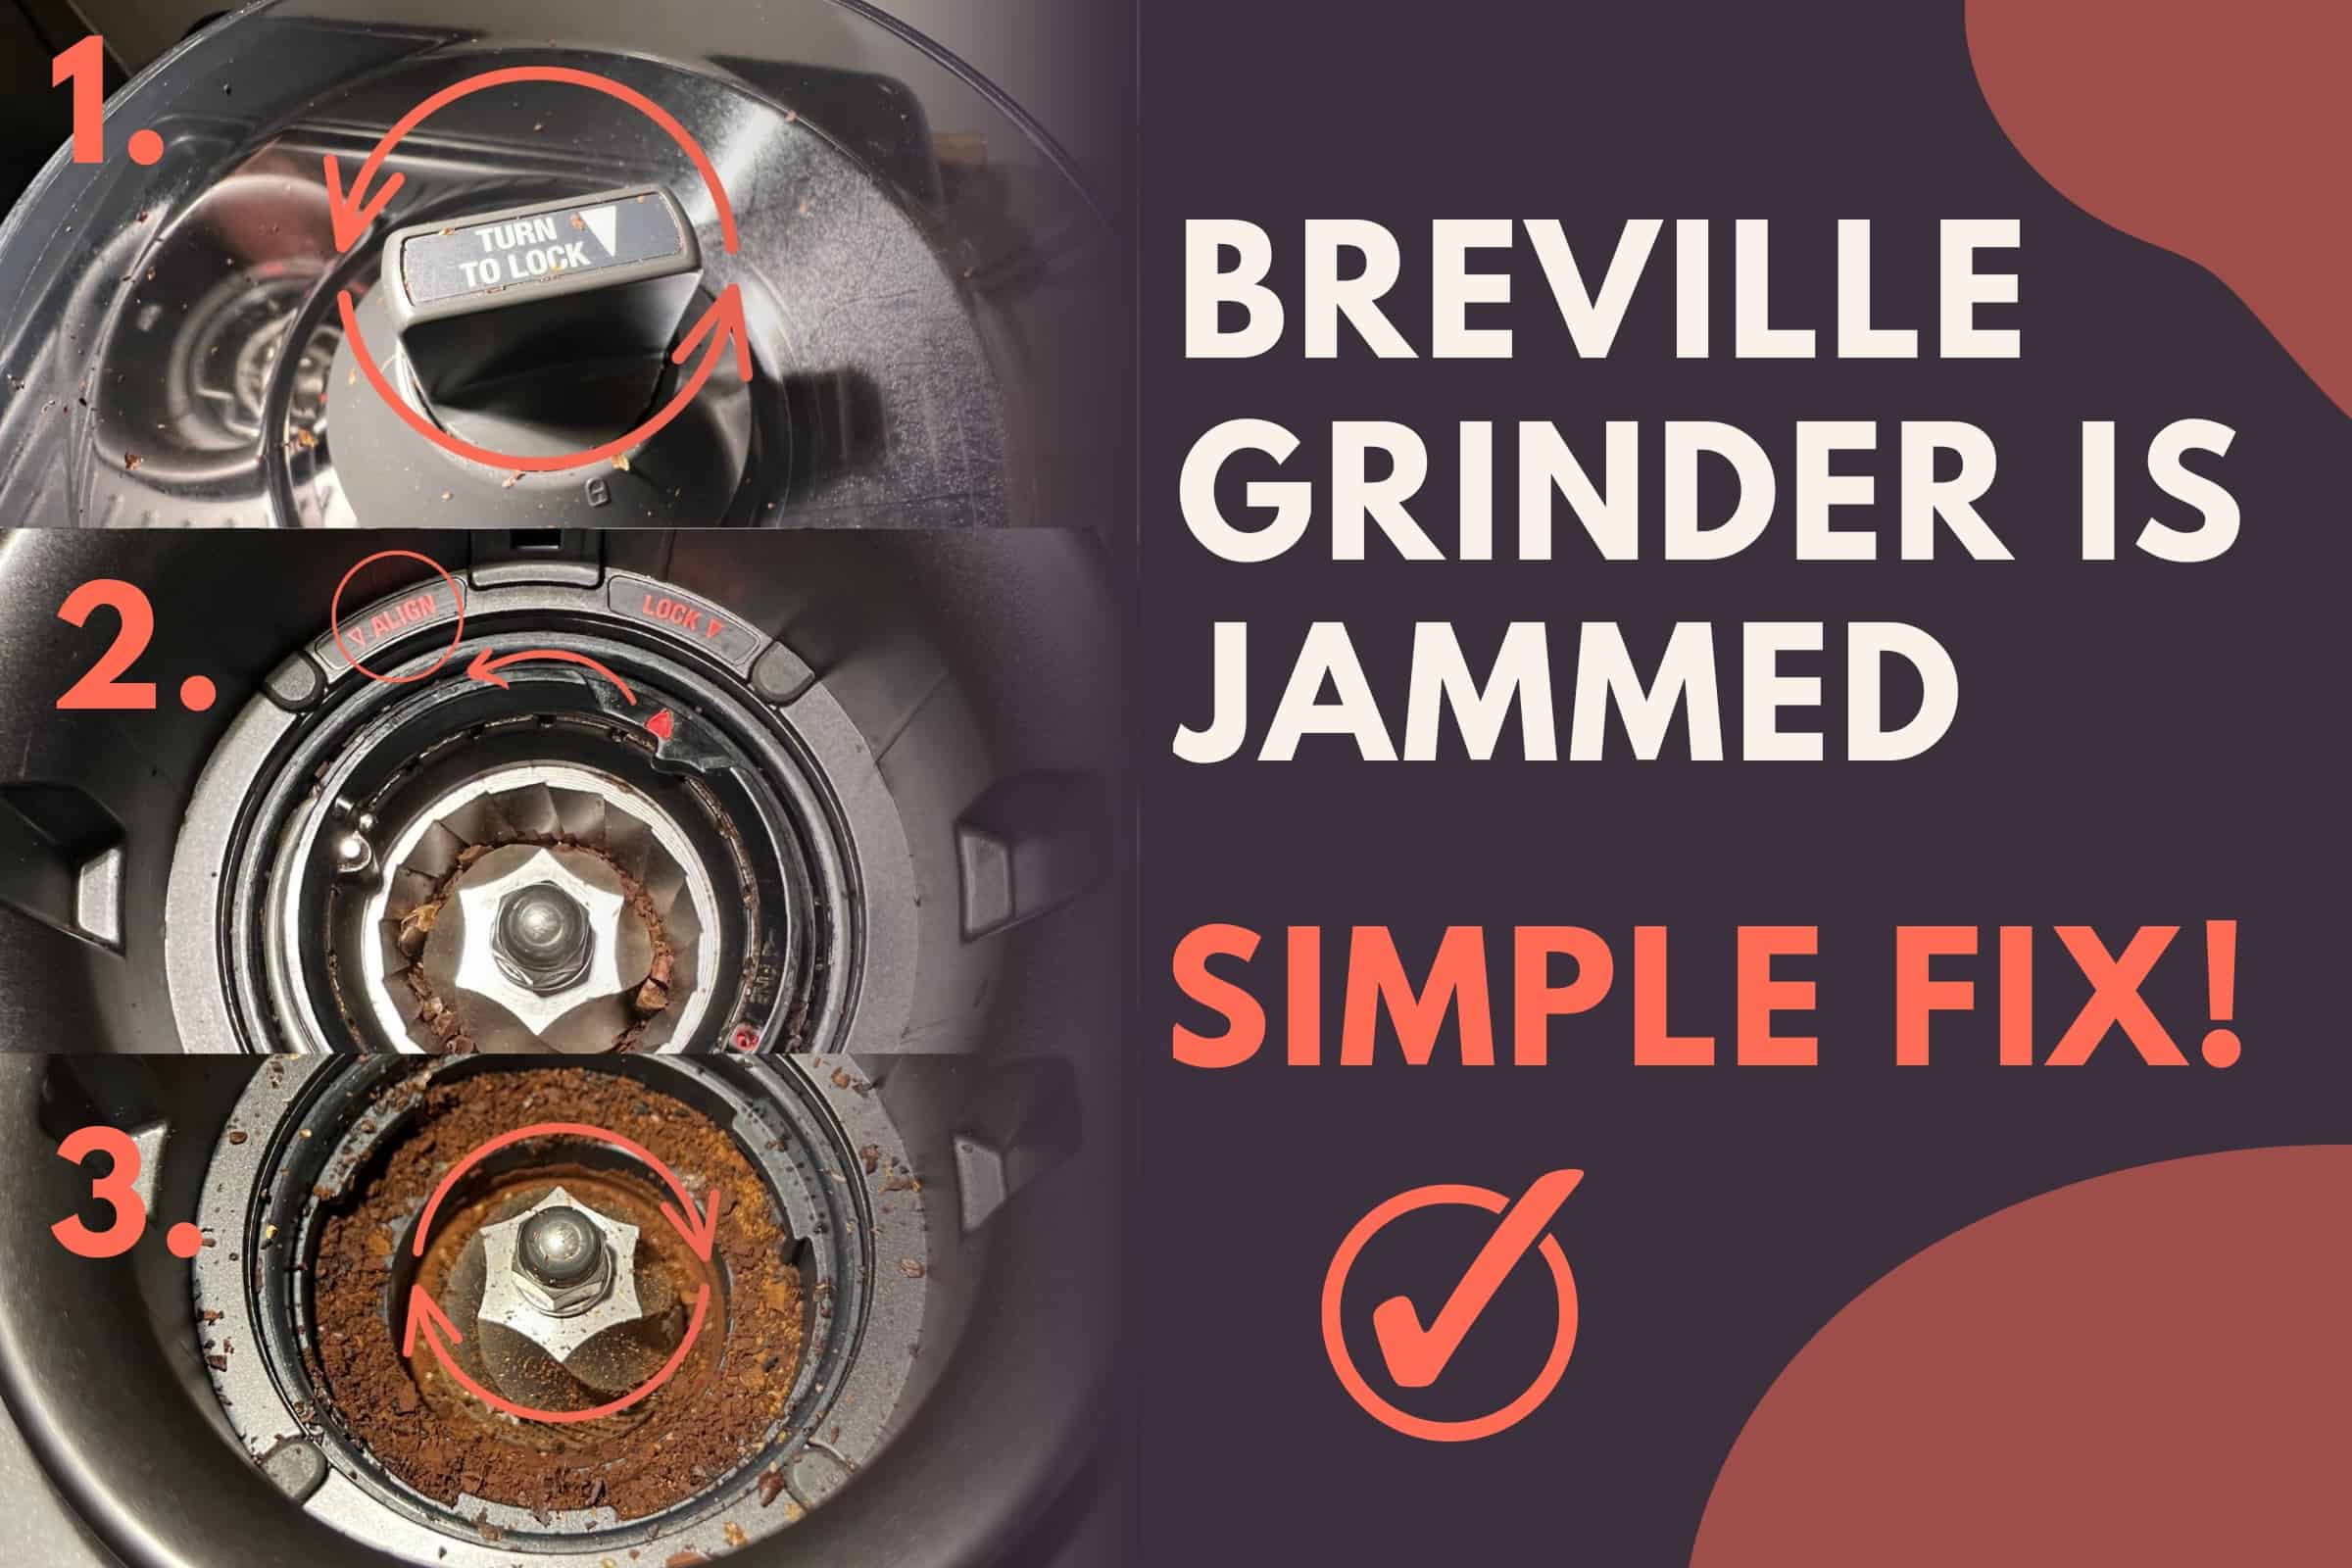 Breville grinder is jammed simple fix